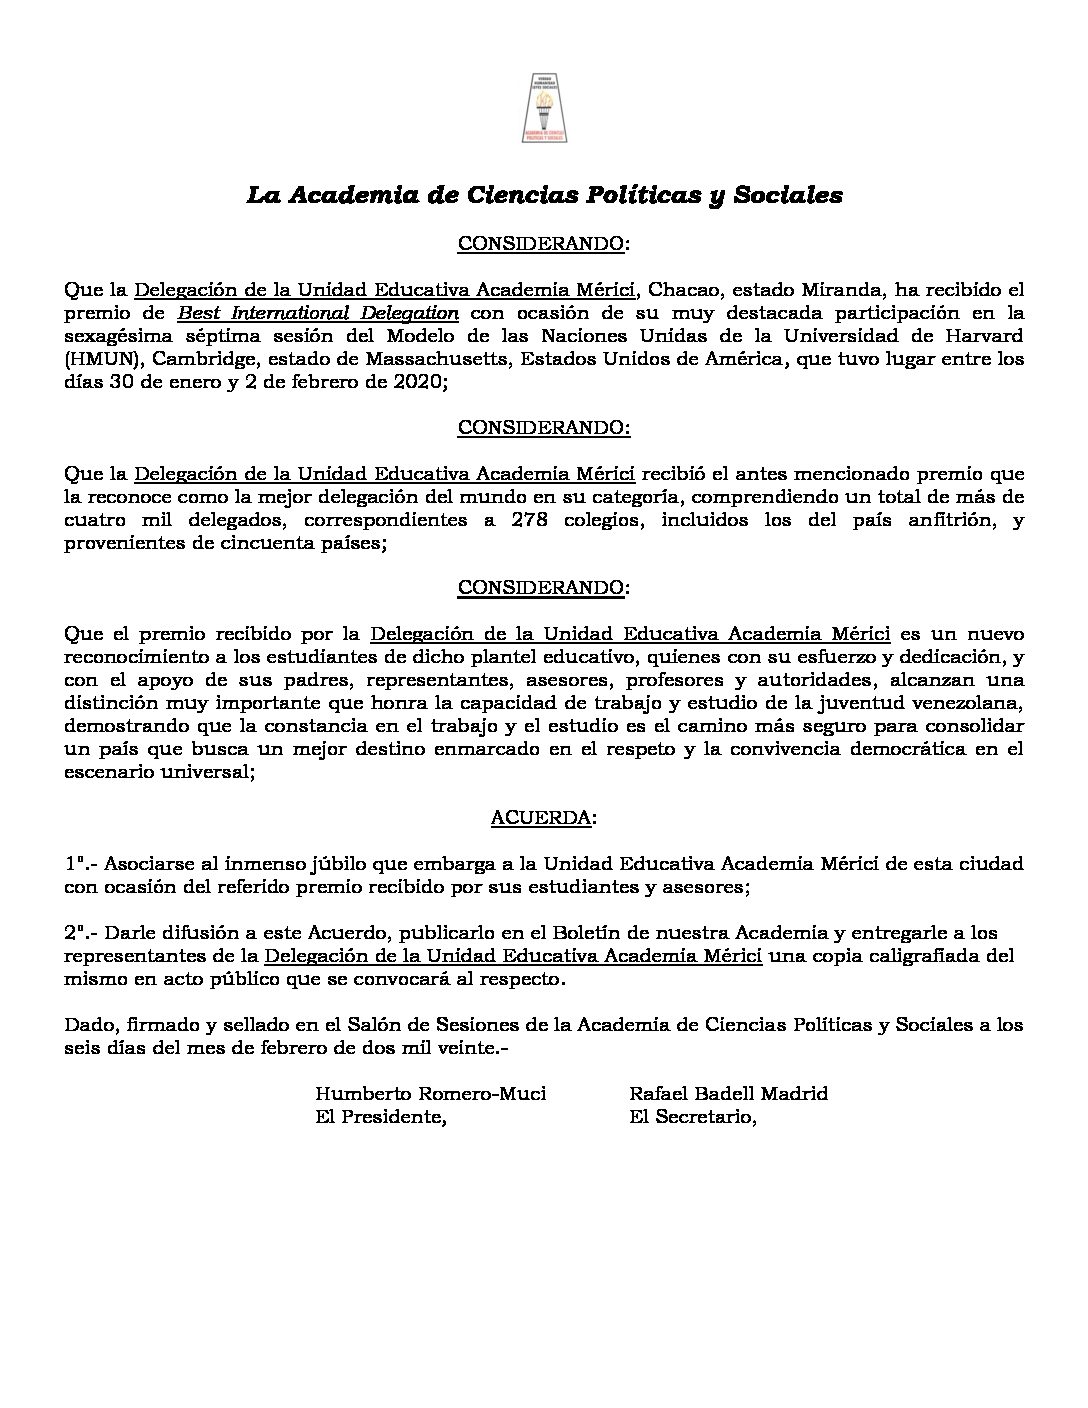 Acuerdo de júbilo a la Delegación de la Unidad Educativa Academia Mérici